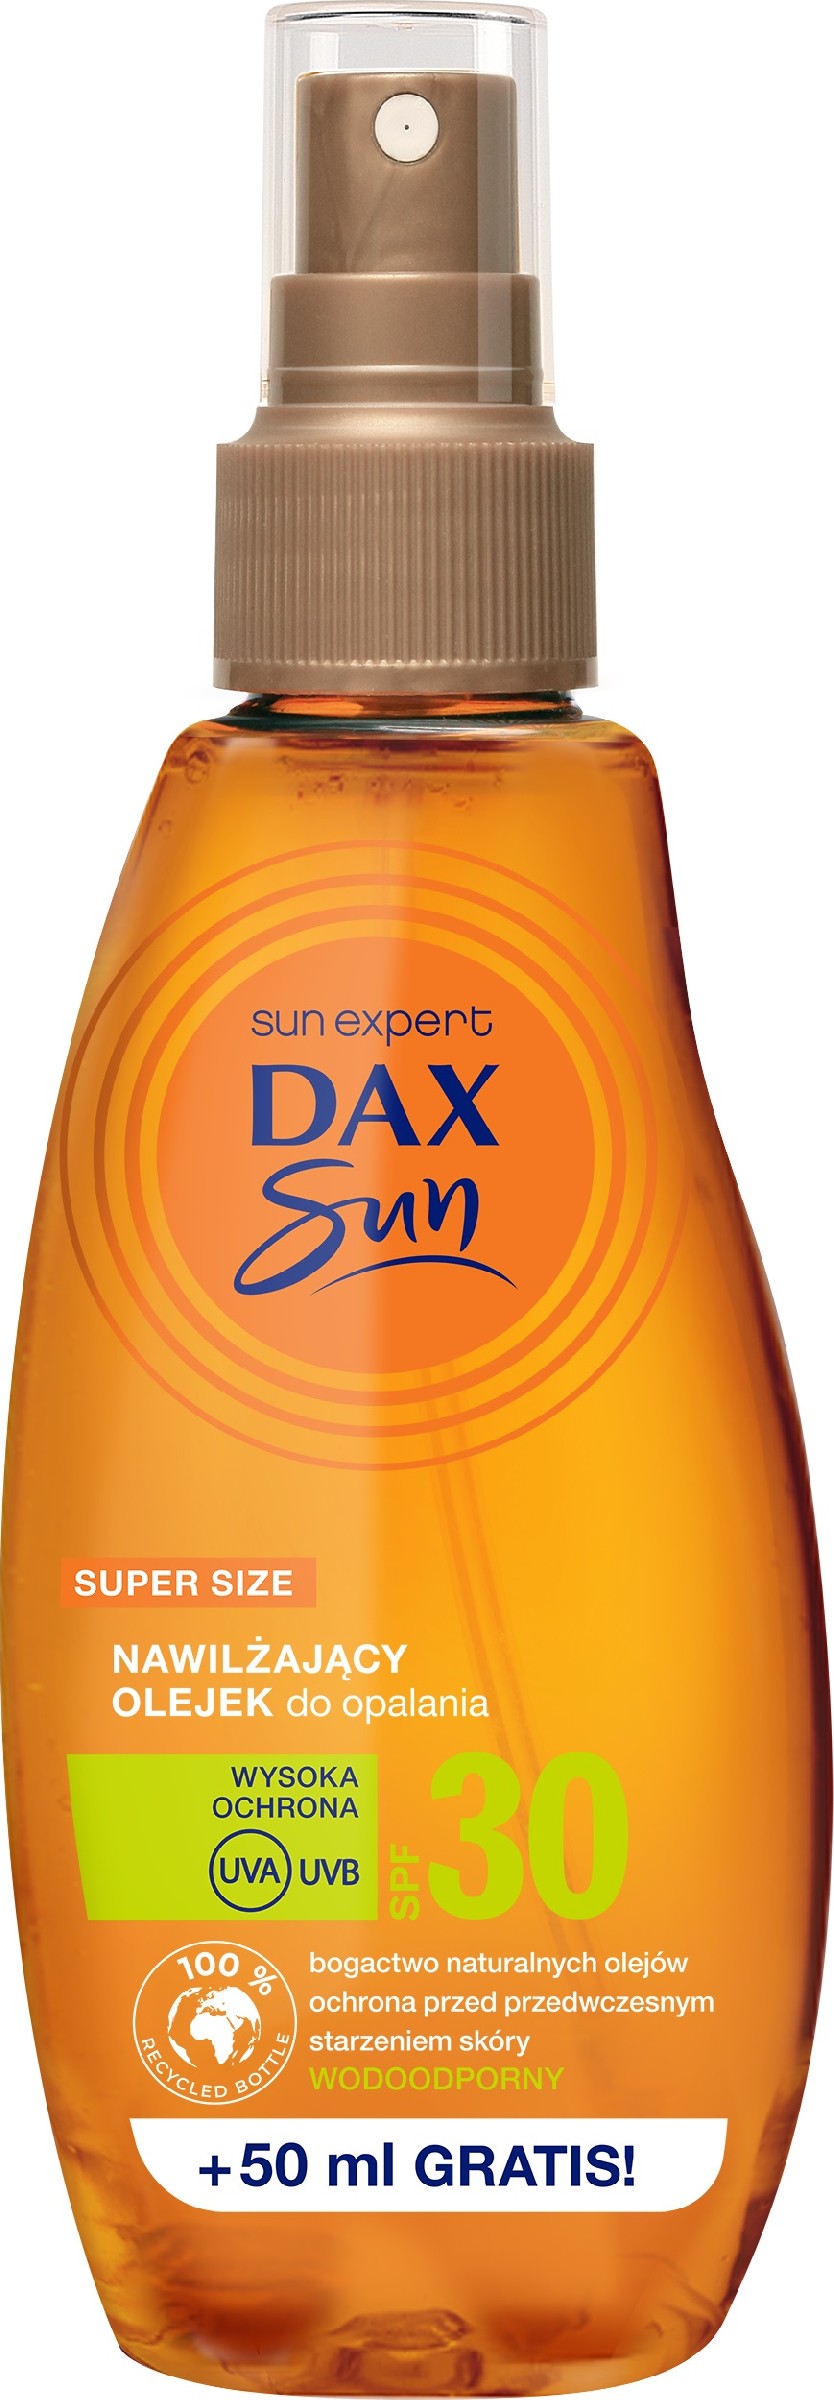 Dax Sun Nawilżający Olejek do opalania SPF30  200ml